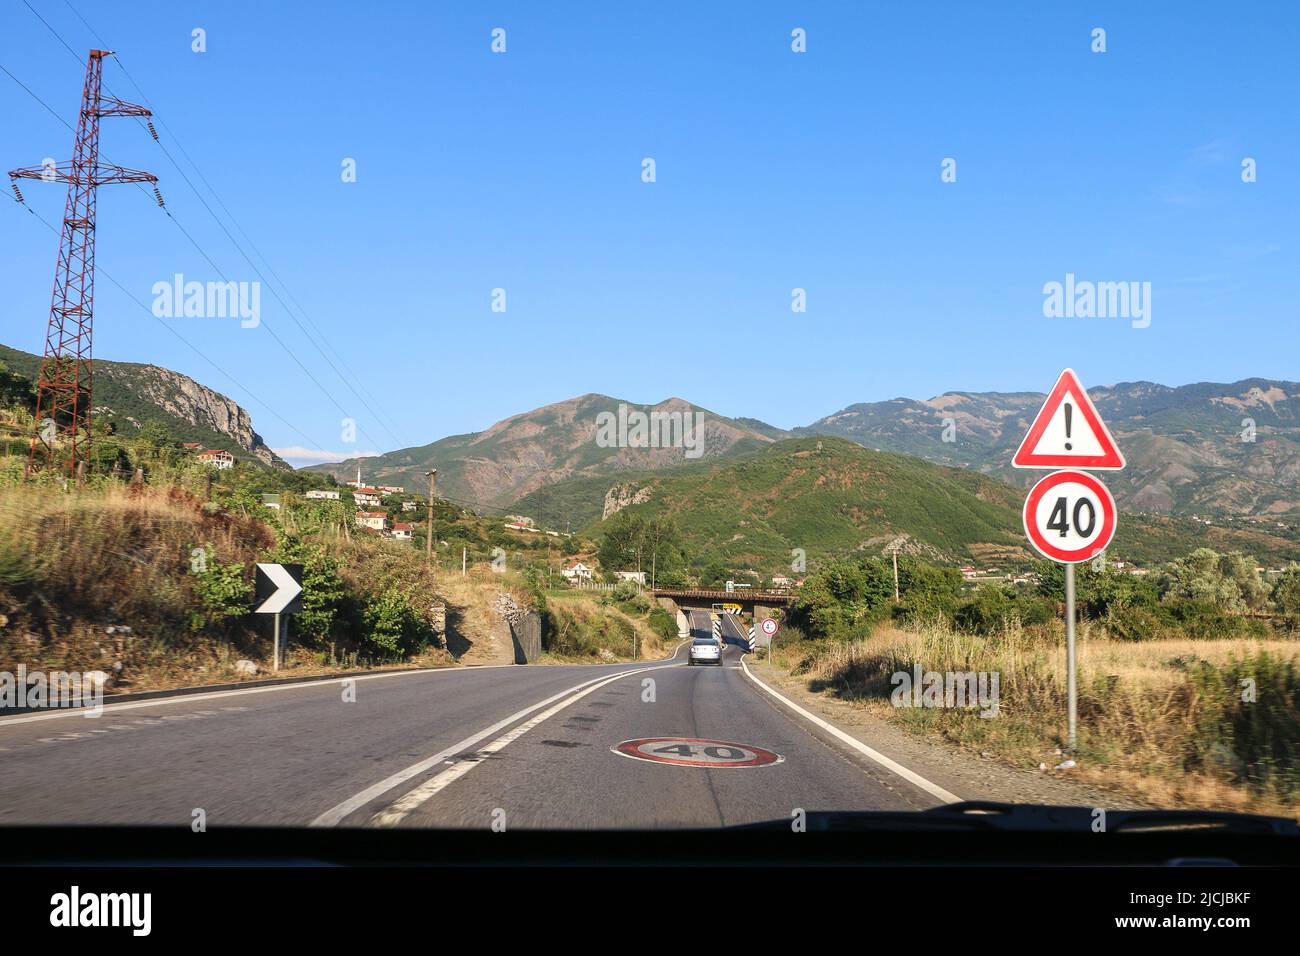 Albanie - 15.07.2017: Route interurbaine typique en Albanie avec limite de vitesse 40 panneau , signal d'alerte, doubles lignes blanches, capturées de la voiture en mouvement Banque D'Images